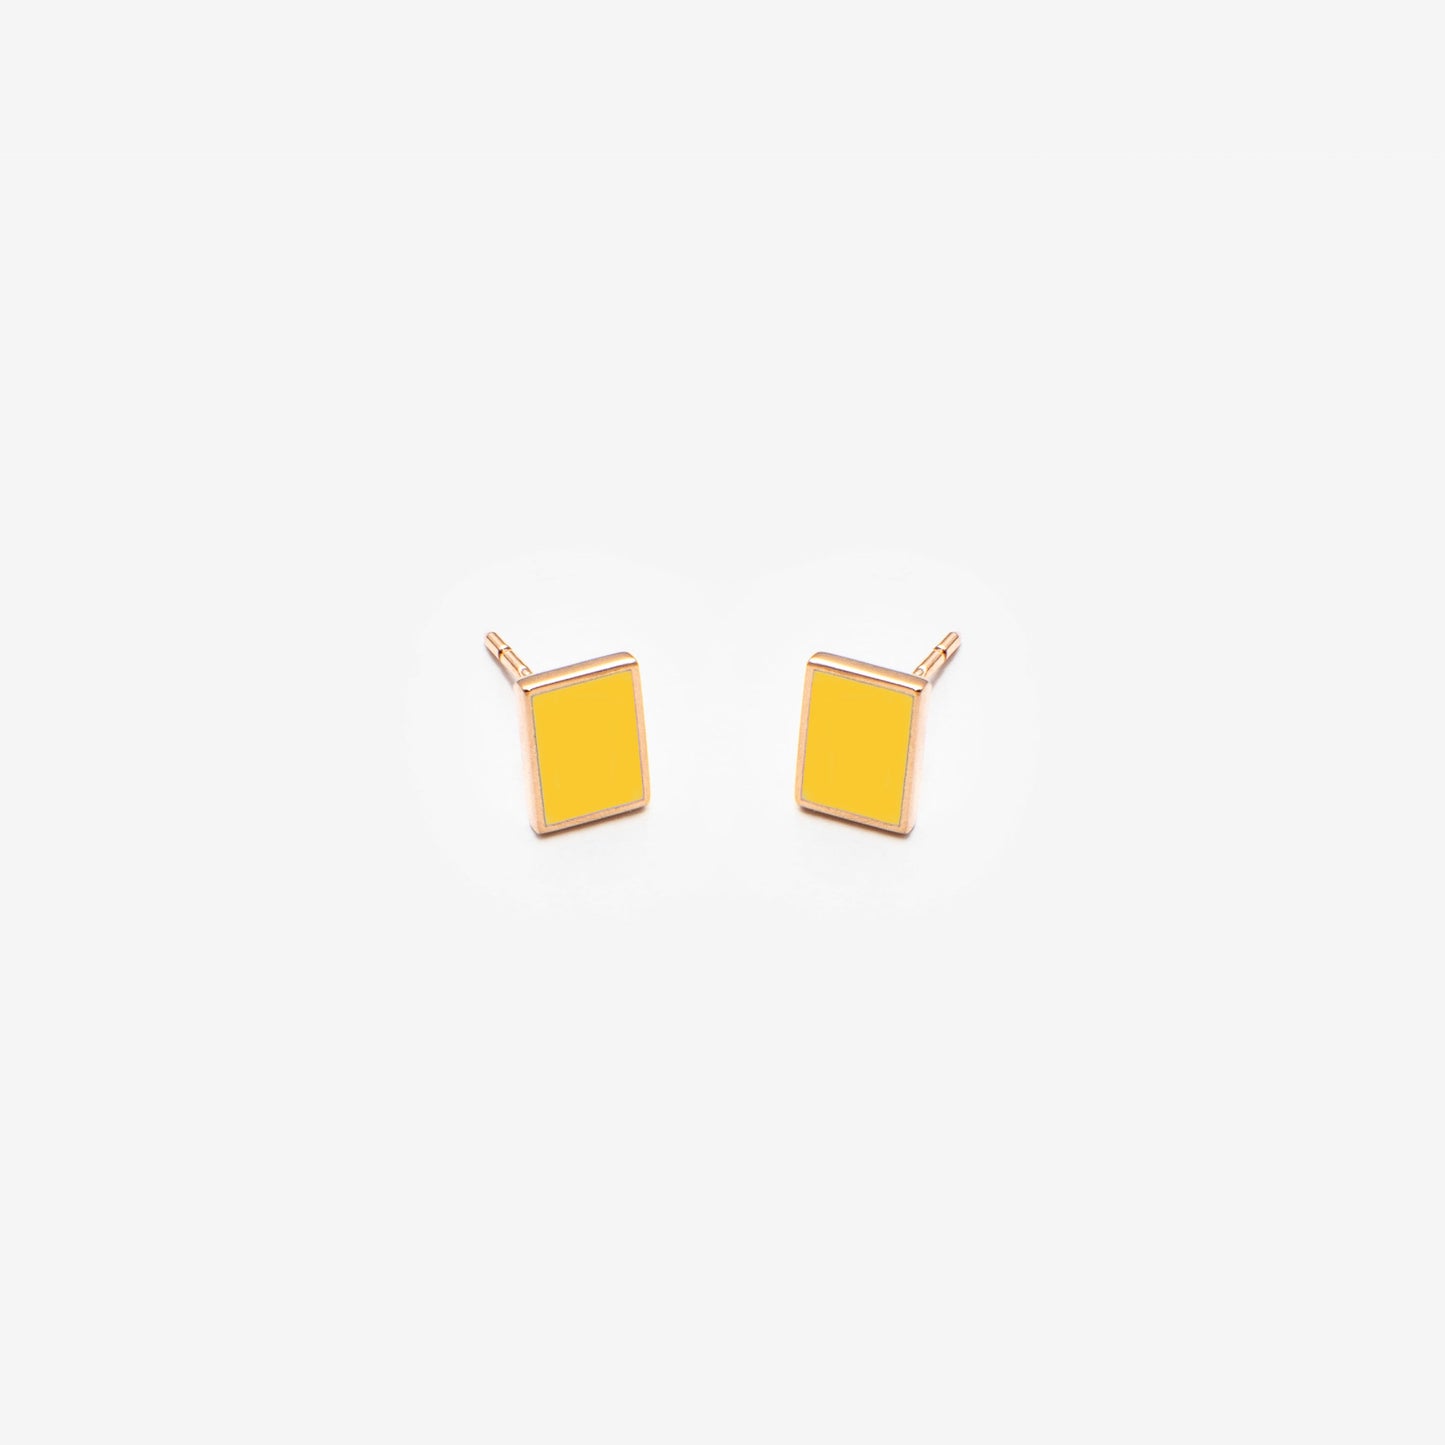 Floating rectangle yellow earrings